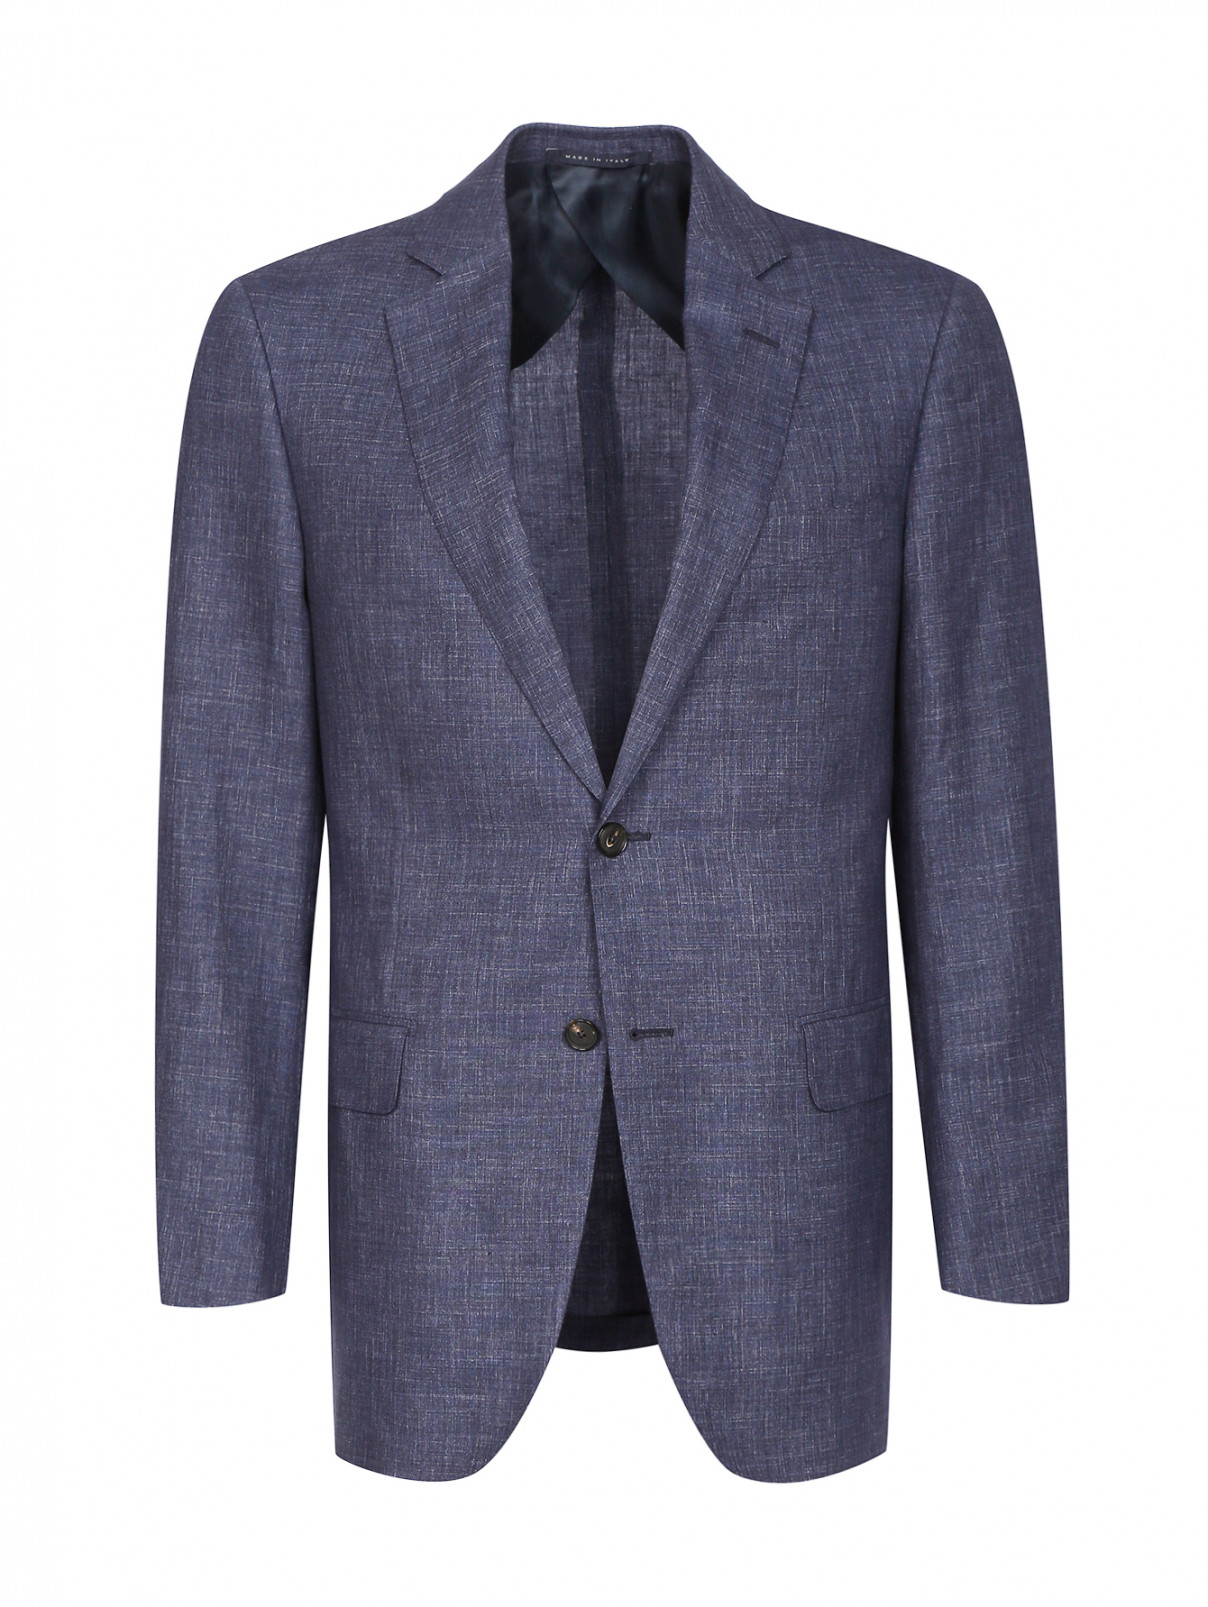 Пиджак однобортный из льна и шерсти Pal Zileri  –  Общий вид  – Цвет:  Синий